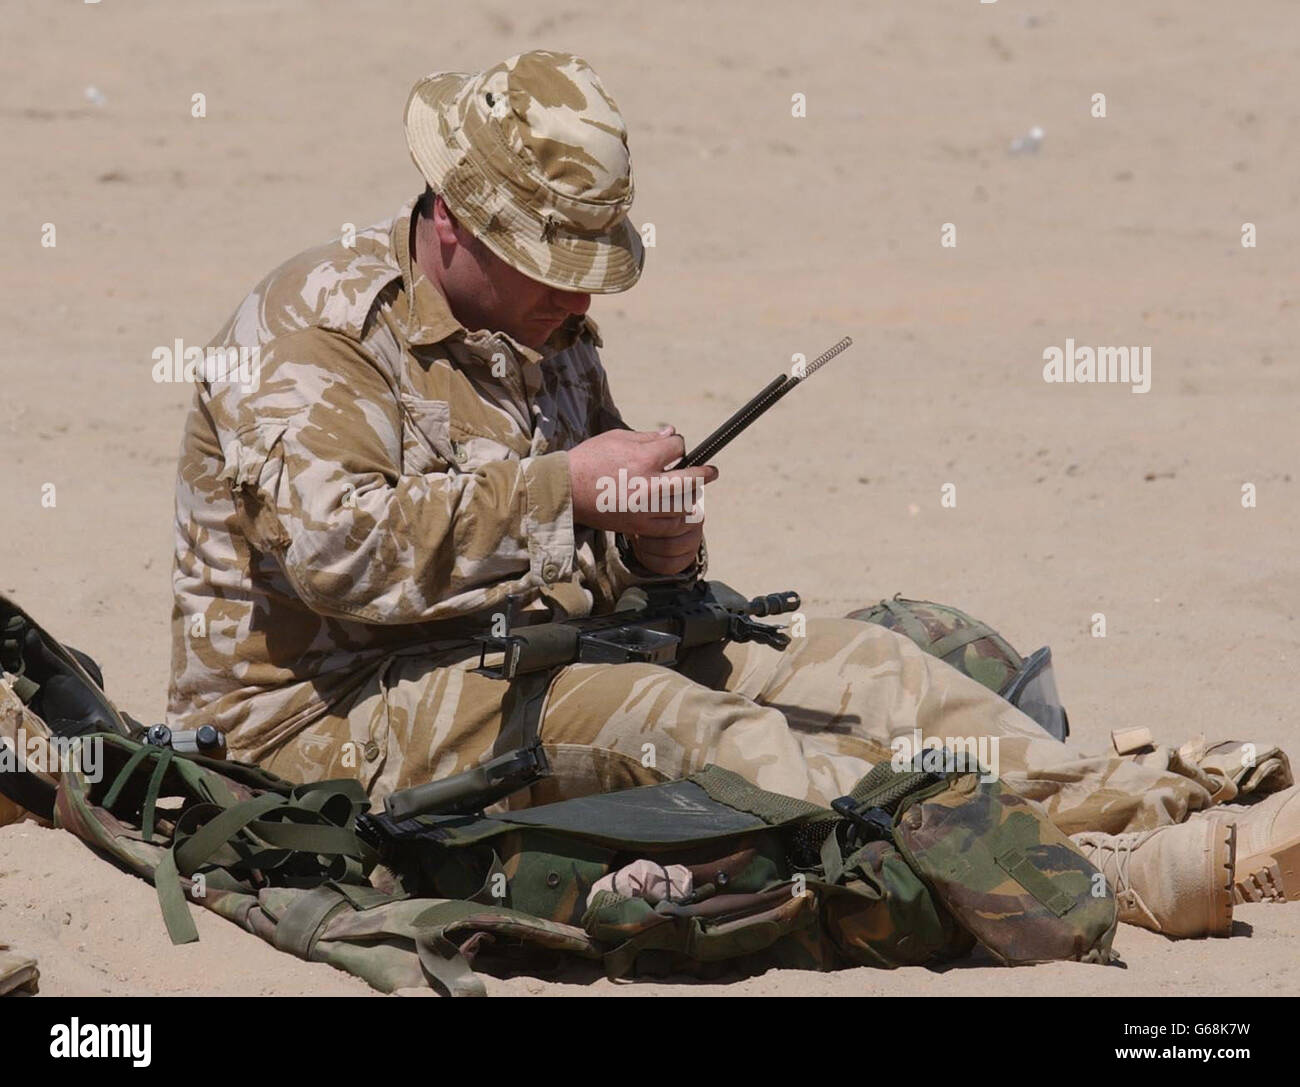 Un membre de la Royal Scots Dragoon Guards inspecte son équipement dans le désert du Koweït, avant une éventuelle action militaire. Banque D'Images